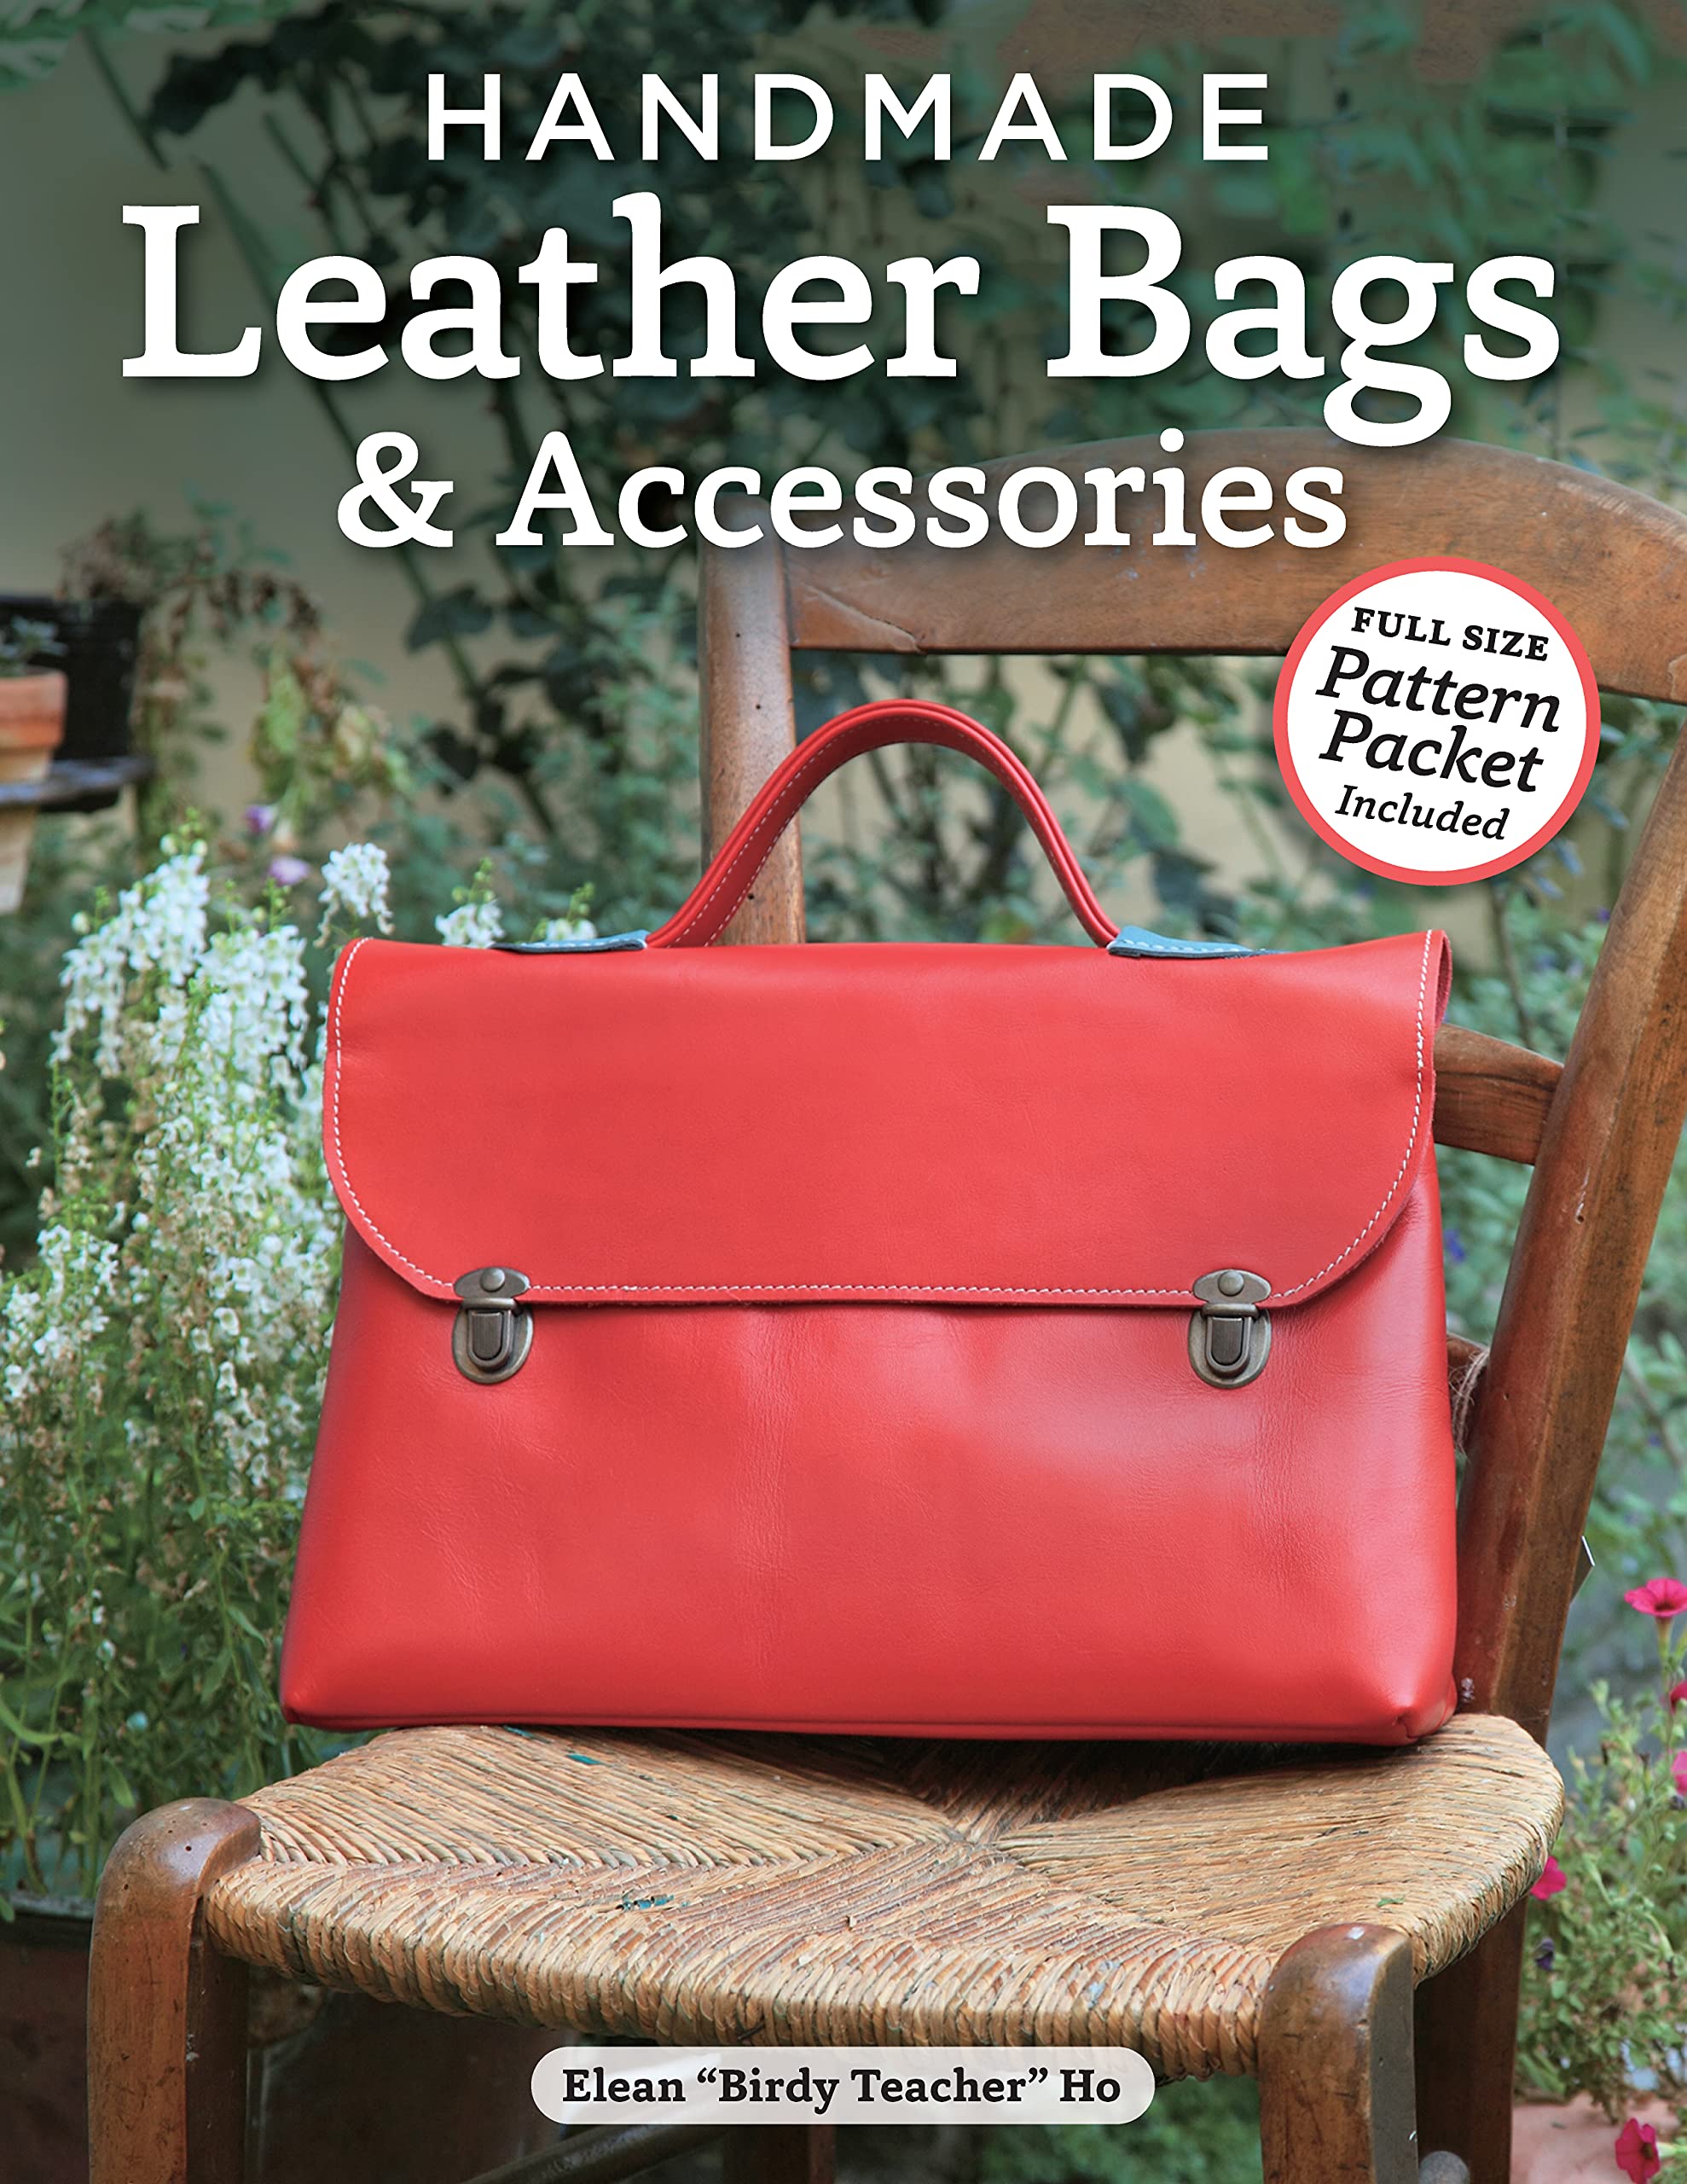 Genuine leather goods & accessories | Der Lederhändler - 044 878 1860